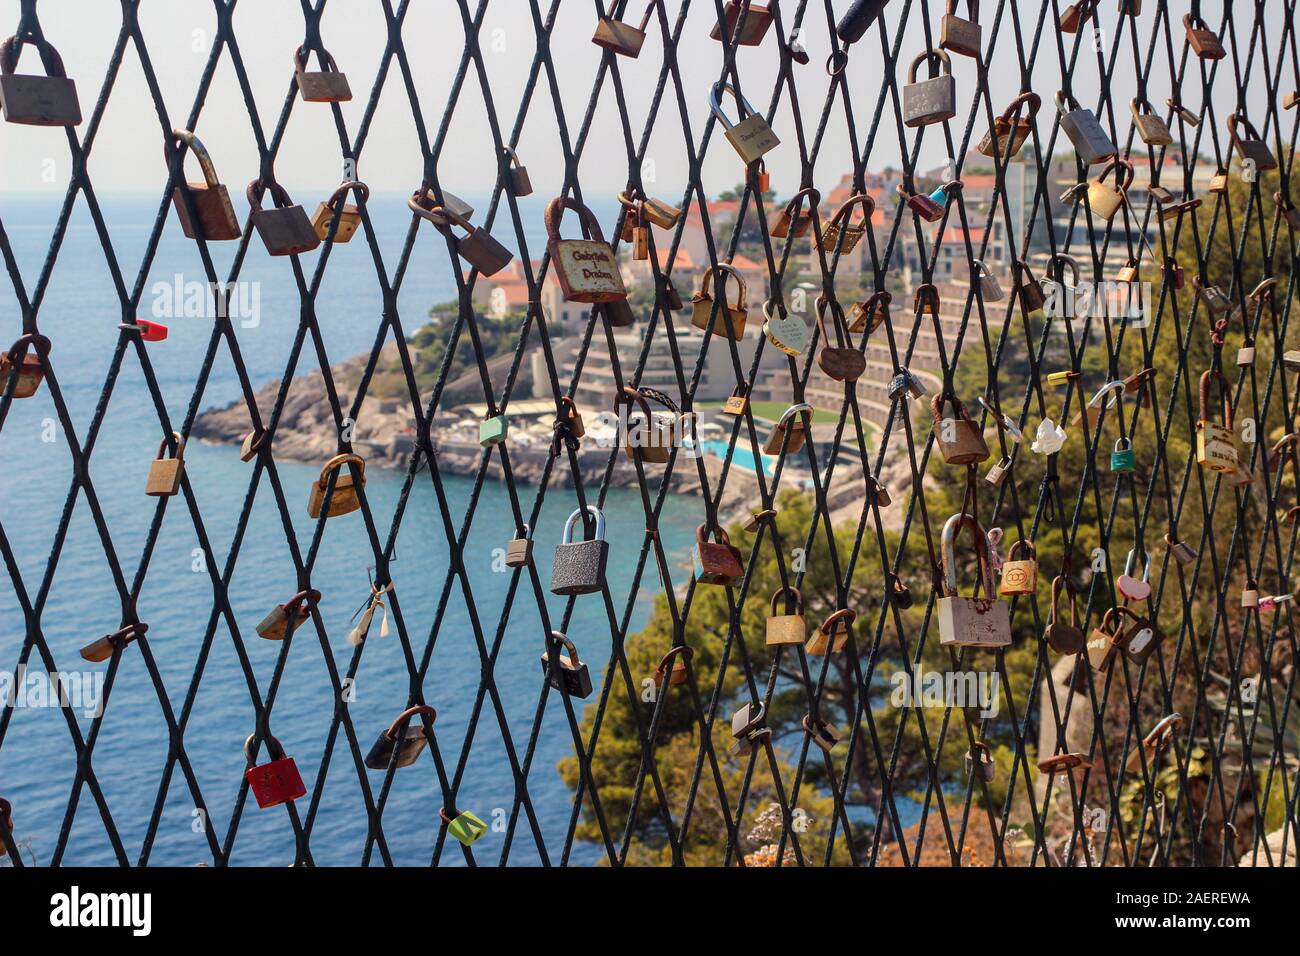 L'amour des verrous sur une clôture, hôtels et Adrianic La mer en arrière-plan, à Dubrovnik, Croatie Banque D'Images